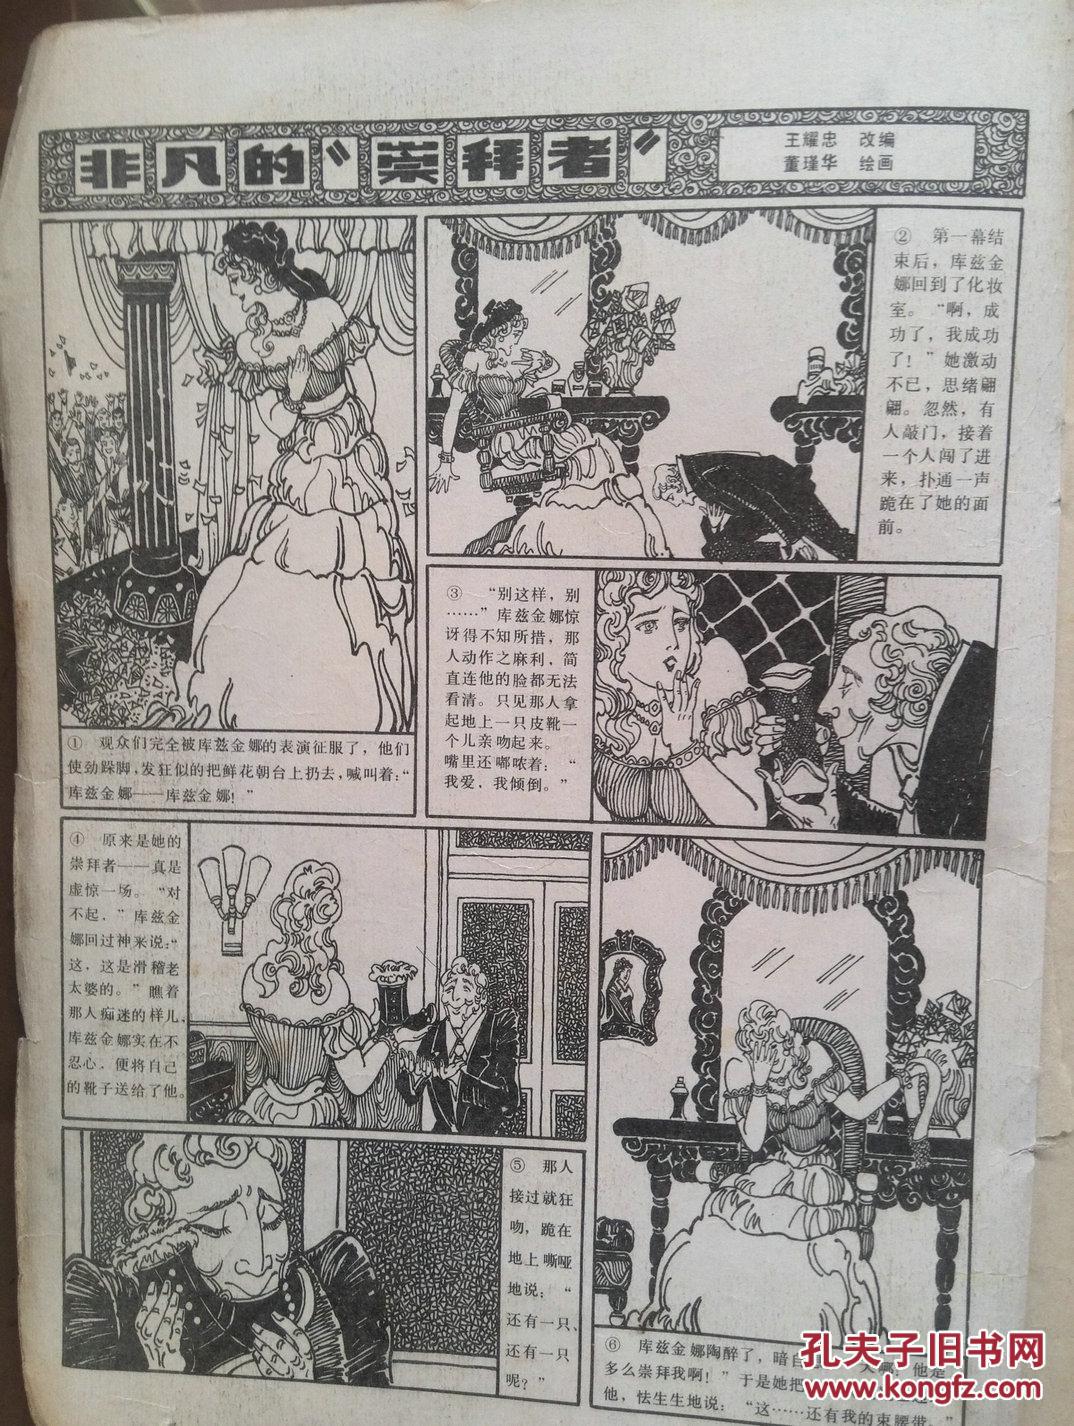 【图】冰凌花1987年总第42期(80年代通俗文学